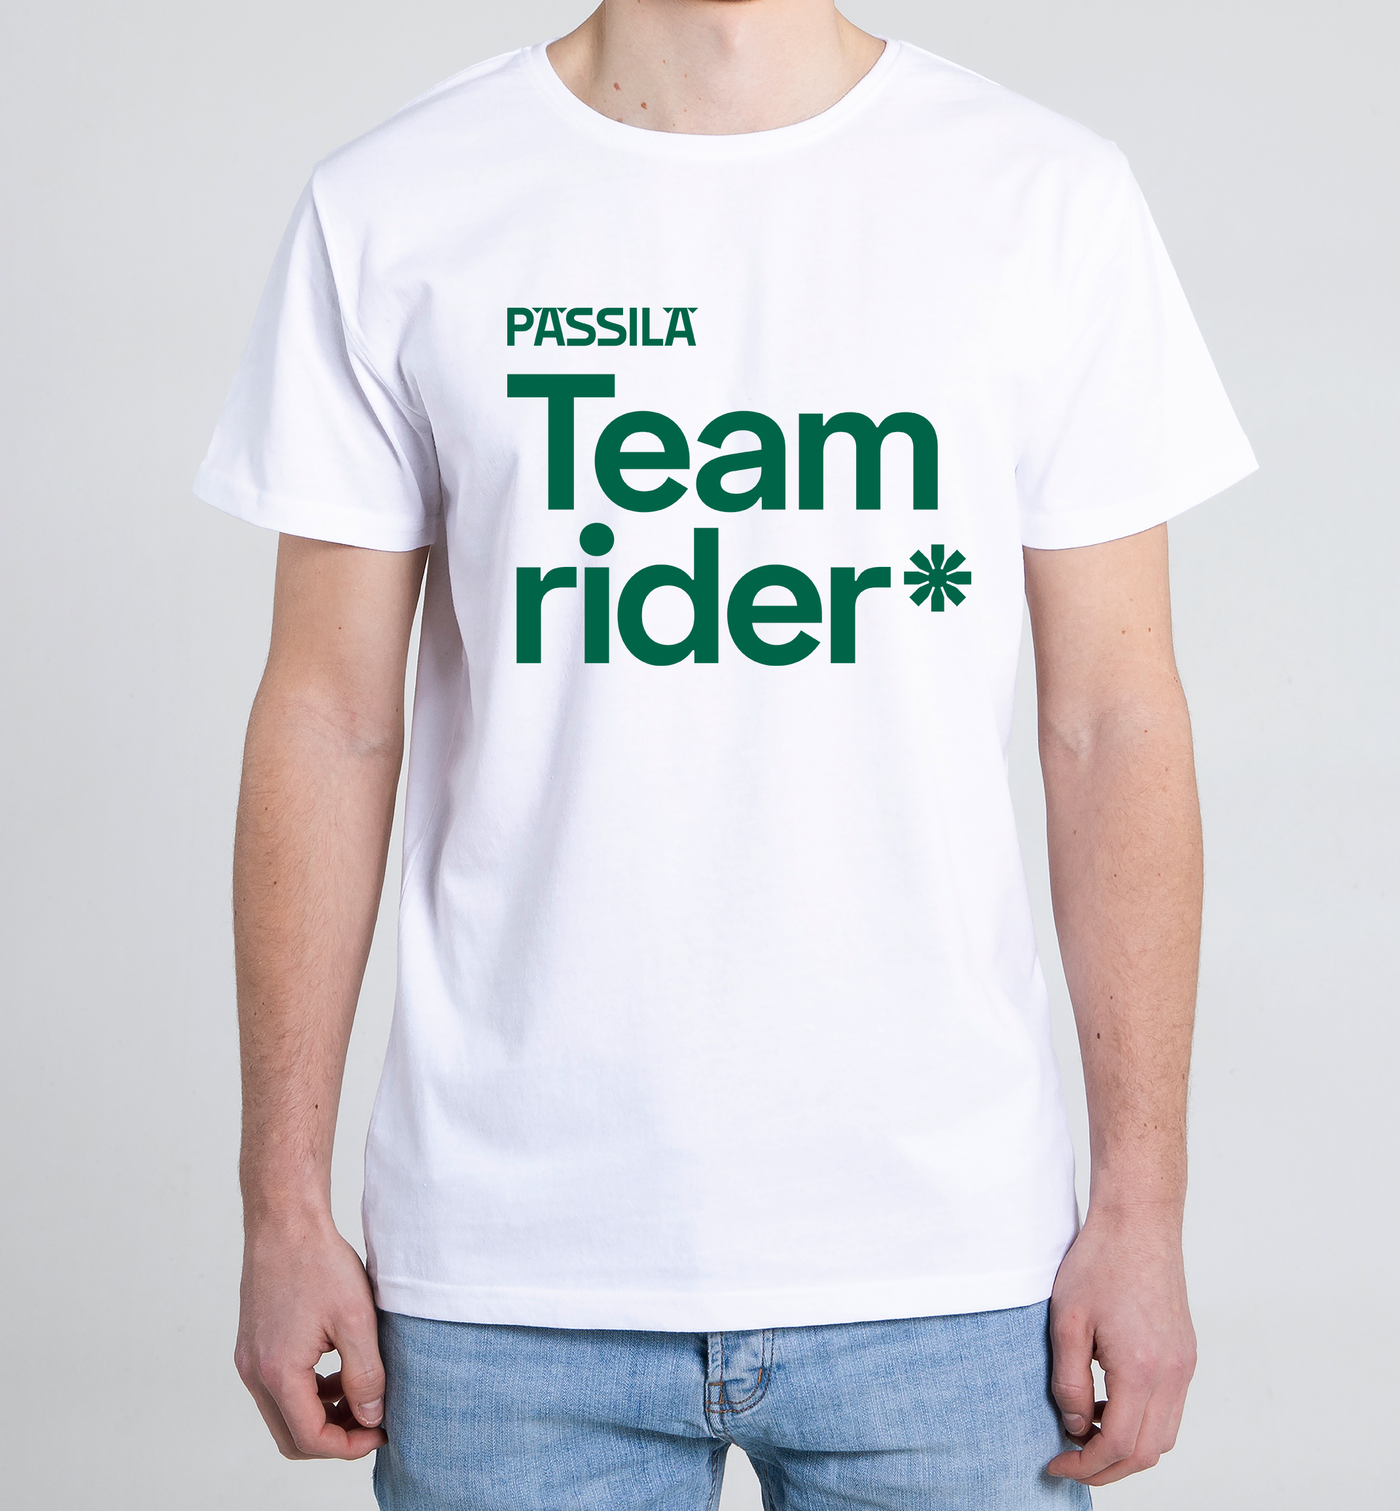 Pässilä Team rider * T-shirt